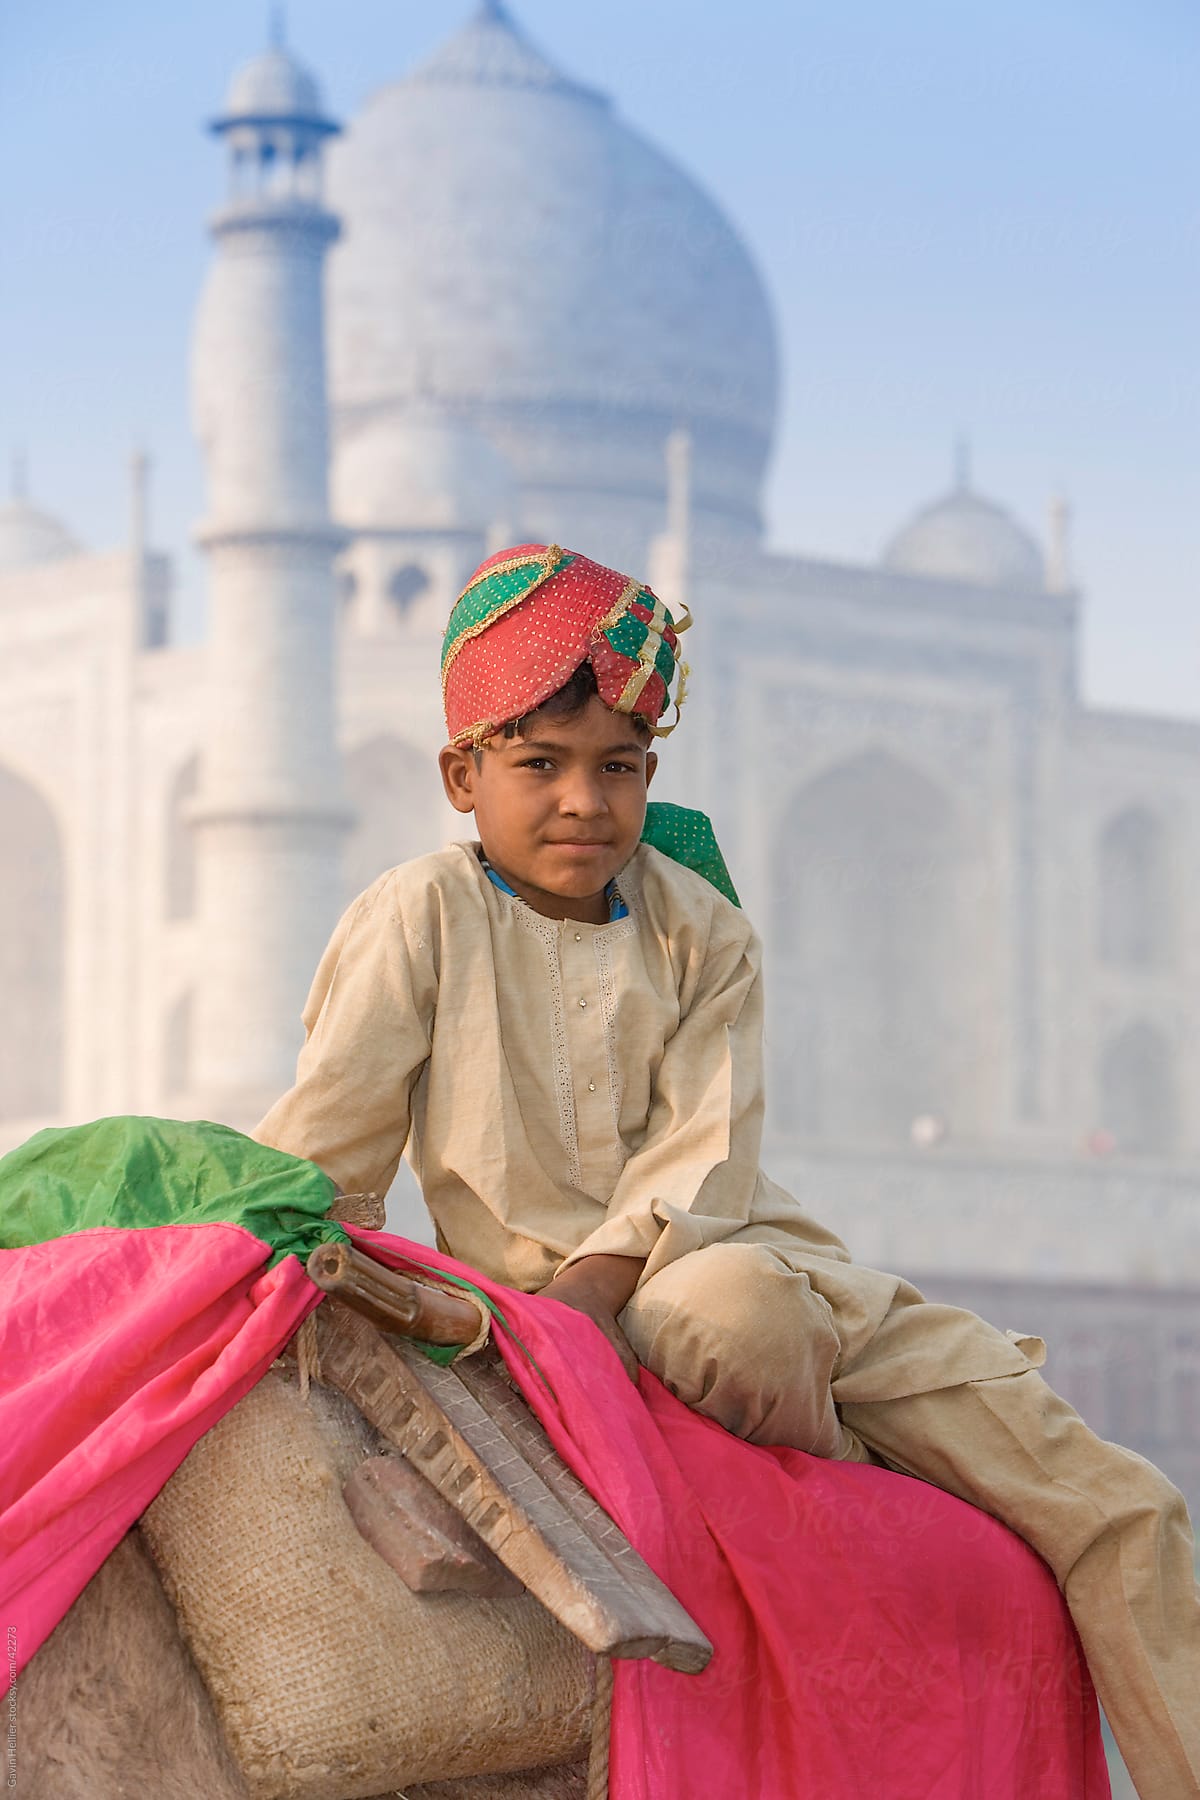 India, Uttar Pradesh, The Taj Mahal, young boy sitting on his camel